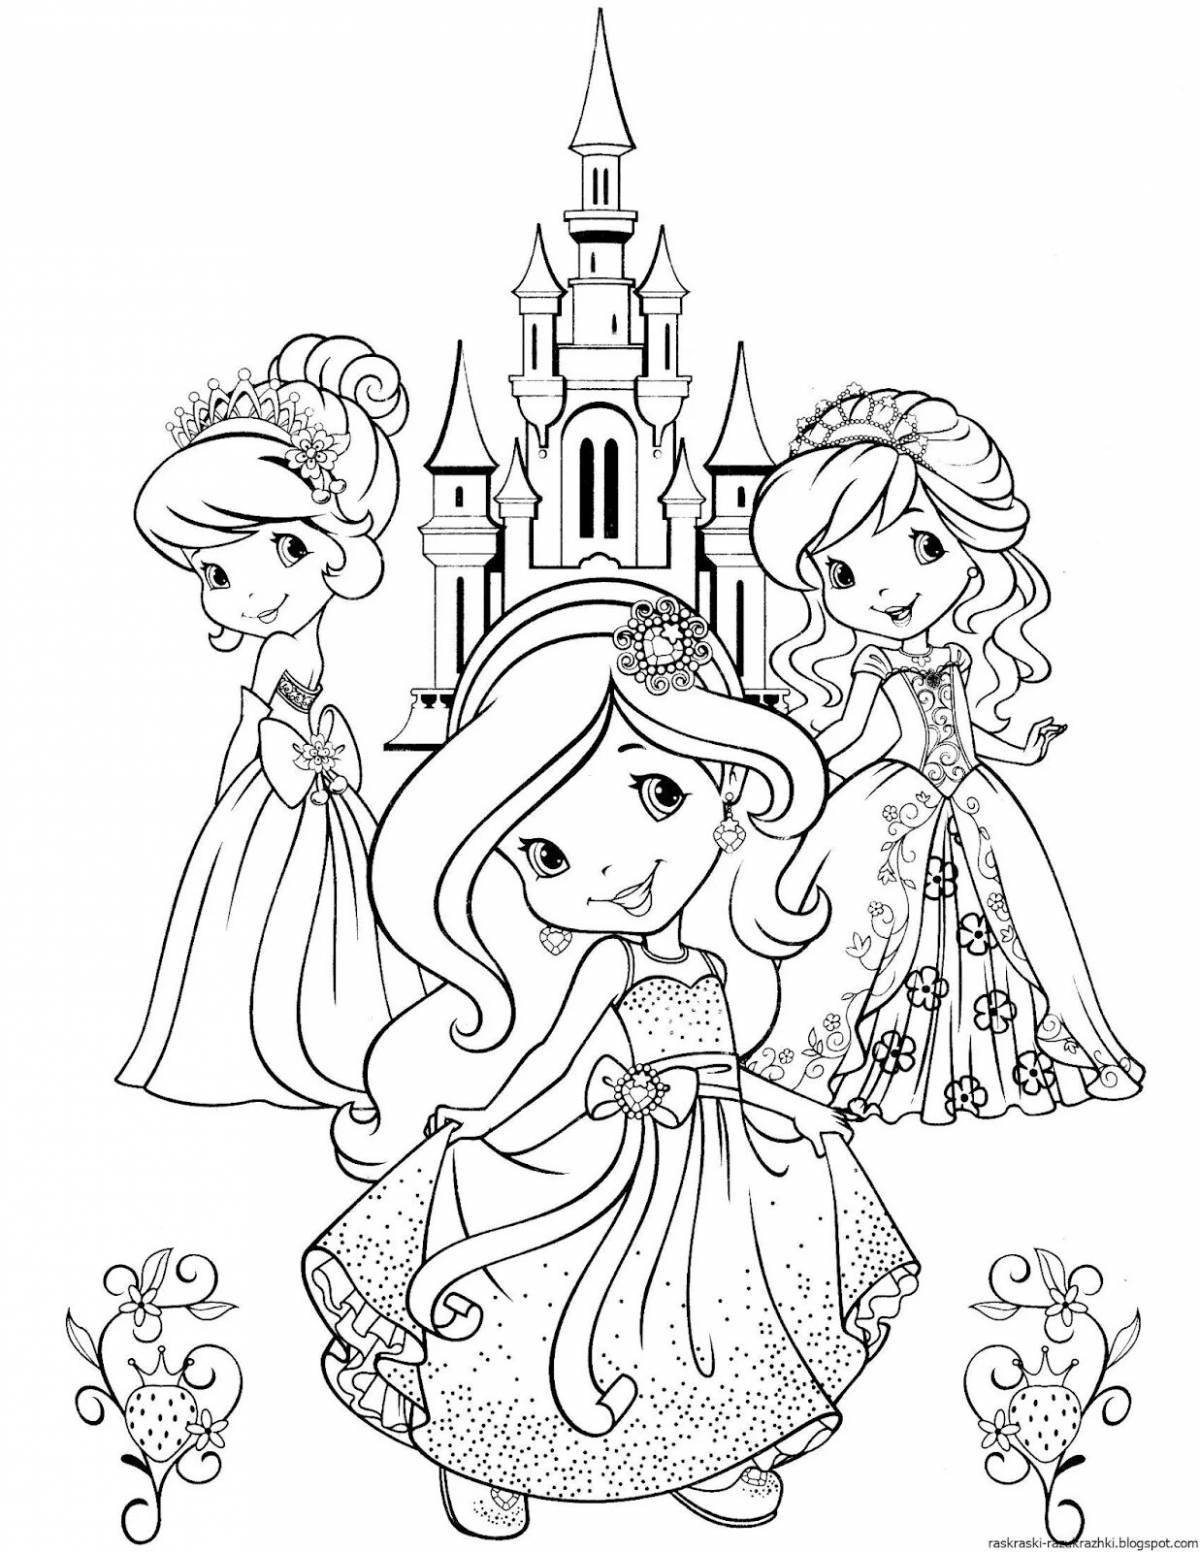 Буйные раскраски принцесс для девочек 4-5 лет